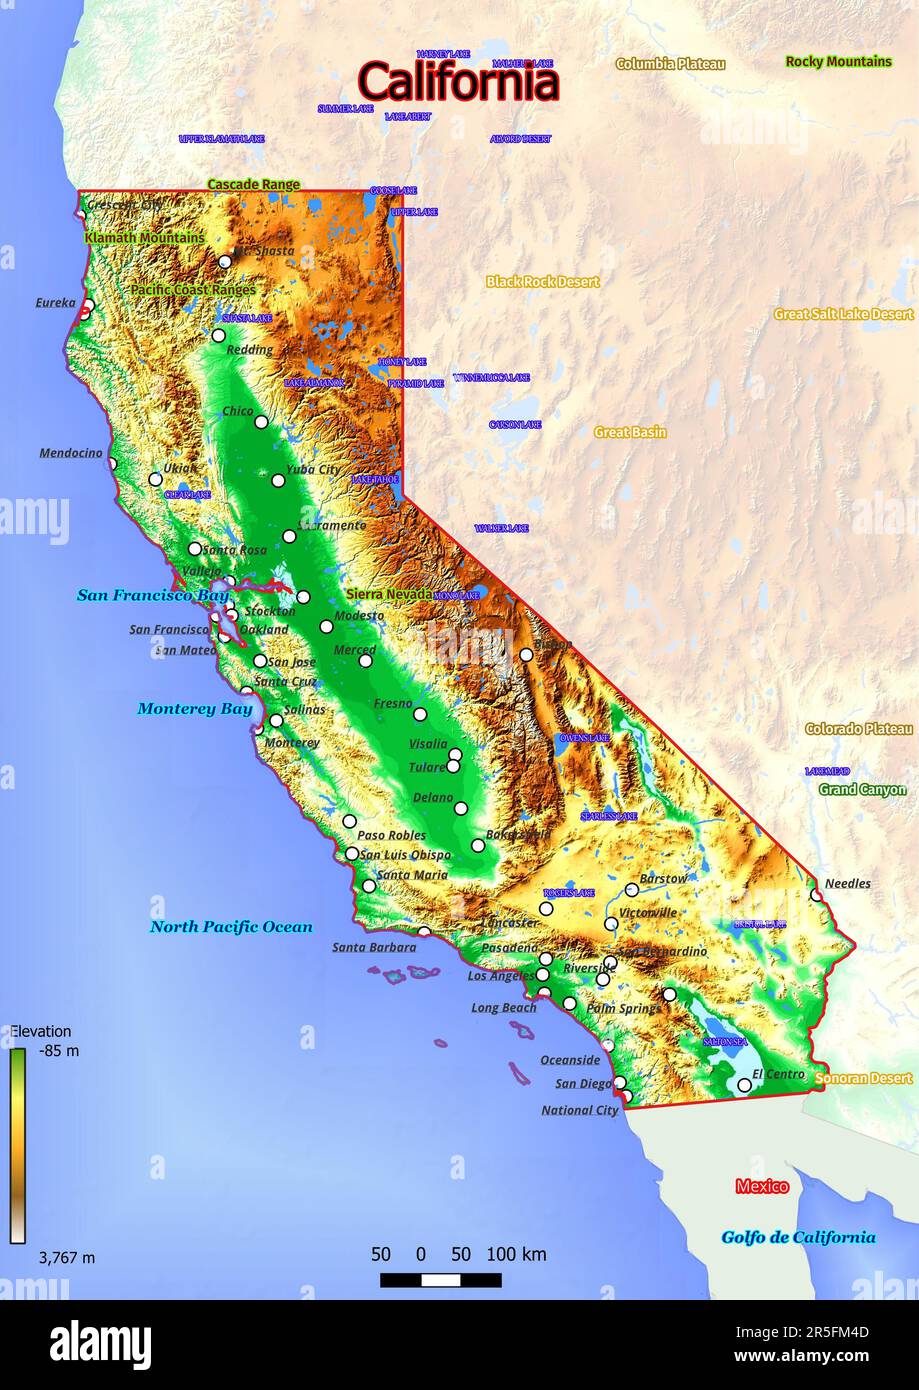 La carte physique de la Californie présente un terrain varié avec des collines ondoyantes, des vallées fluviales fertiles et des forêts denses. Banque D'Images